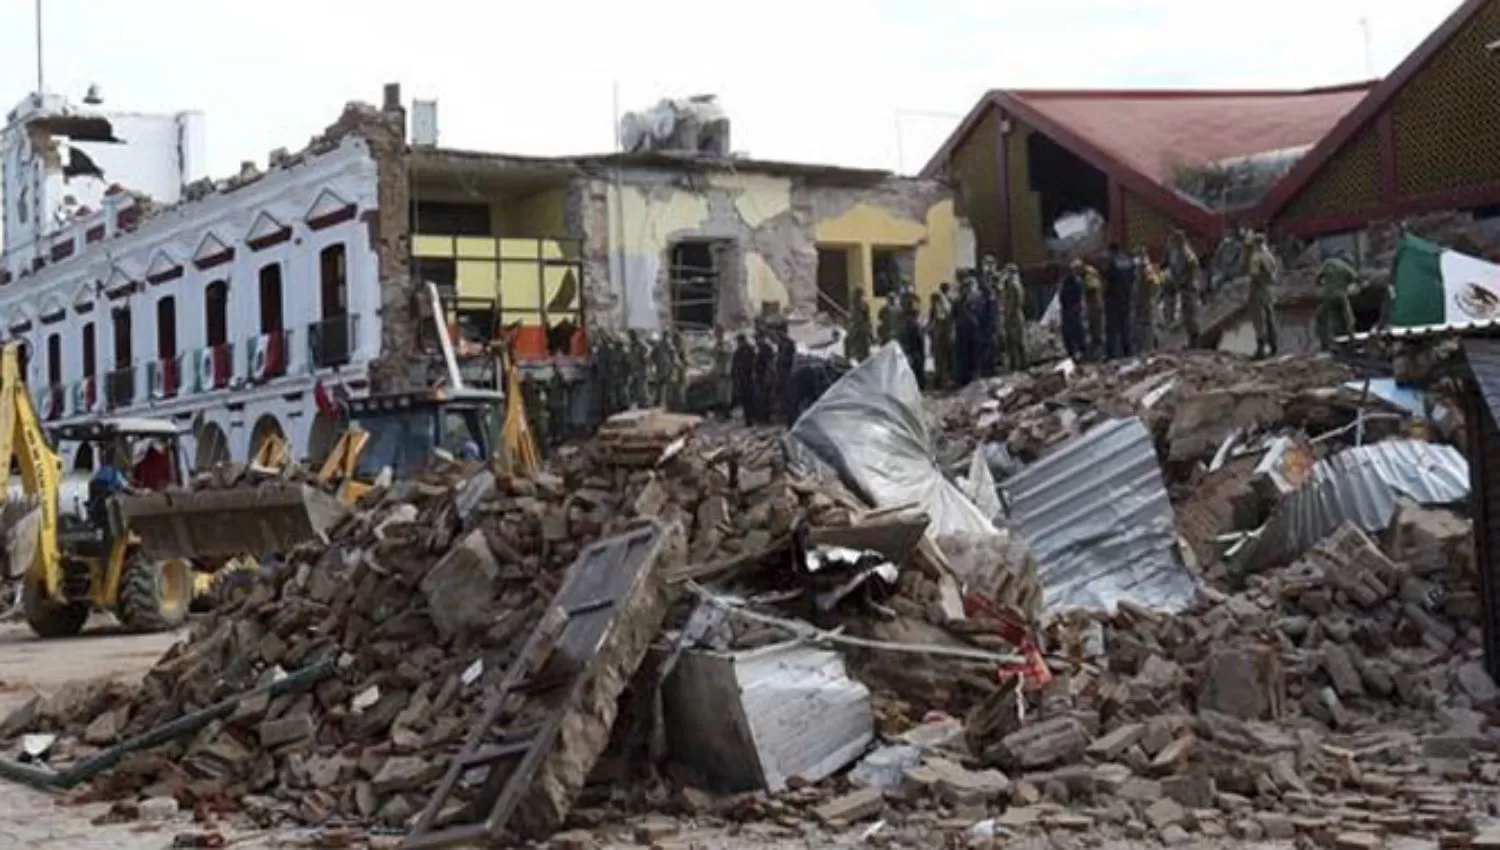 DESTRUIDO. La cifra de muertos por el terremoto del pasado jueves en México se elevó. 